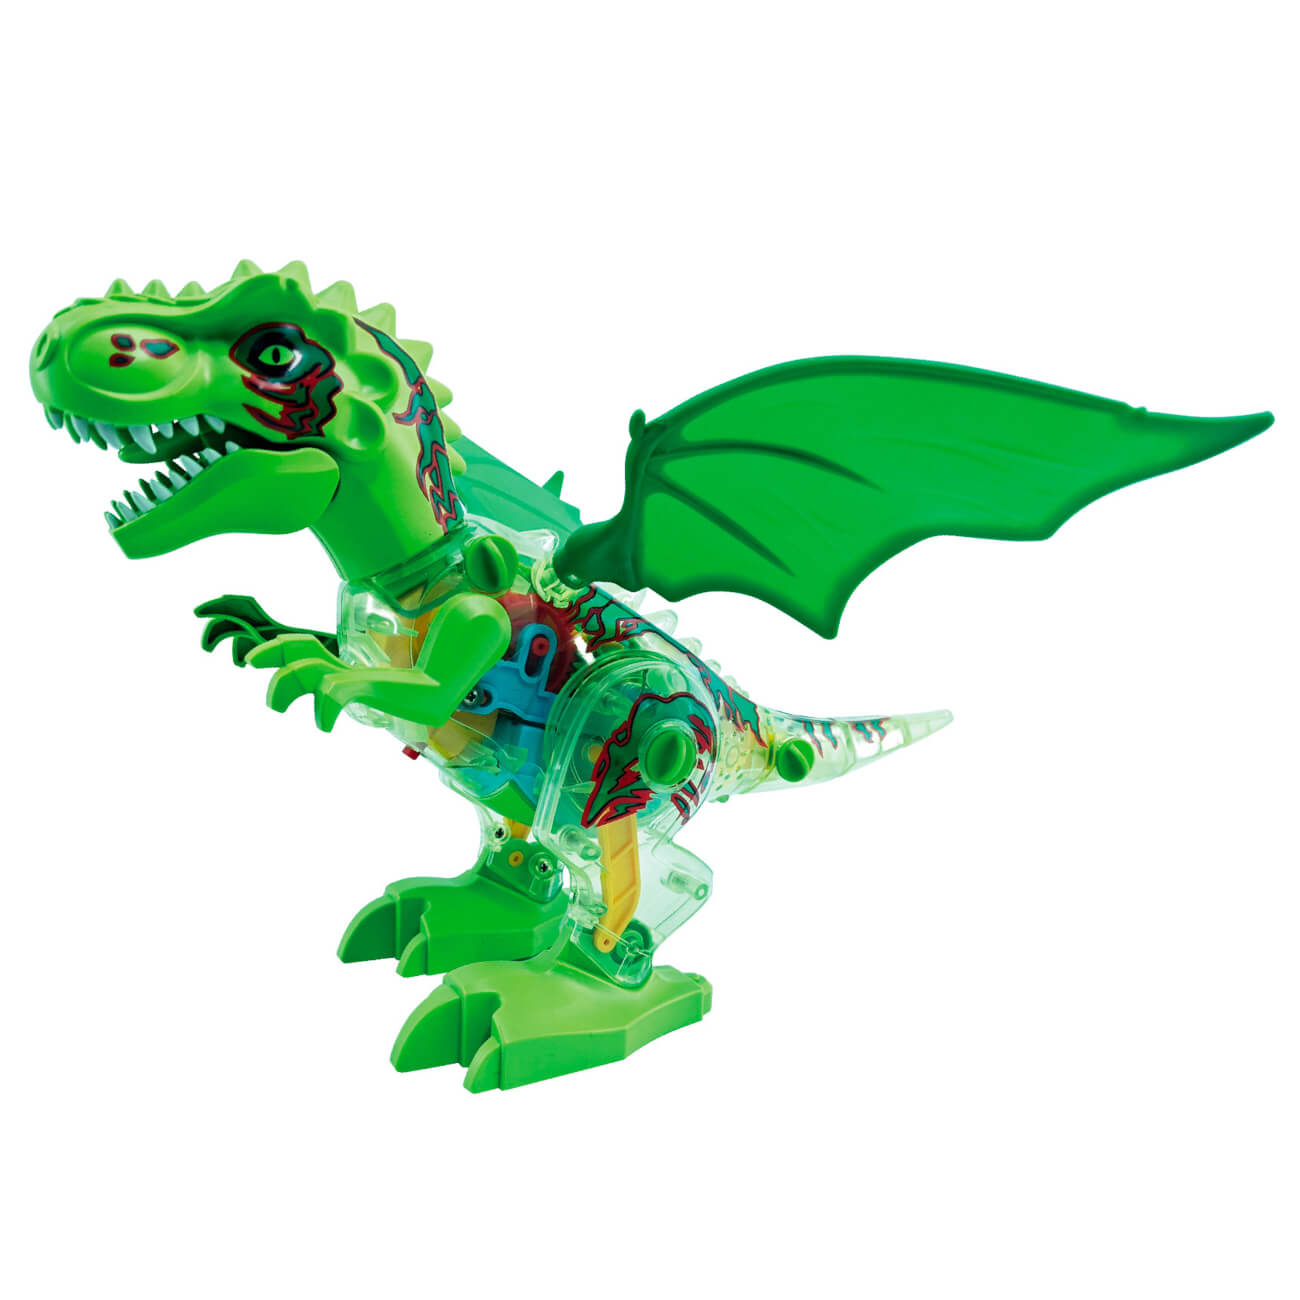 Игрушка детская, 30 см, анимированная, музыкальная, с подсветкой, пластик, Дракон, Game трехосный монстр crossbot дракон 4х4 р у пар с подсветкой 6 колес аккум 870793